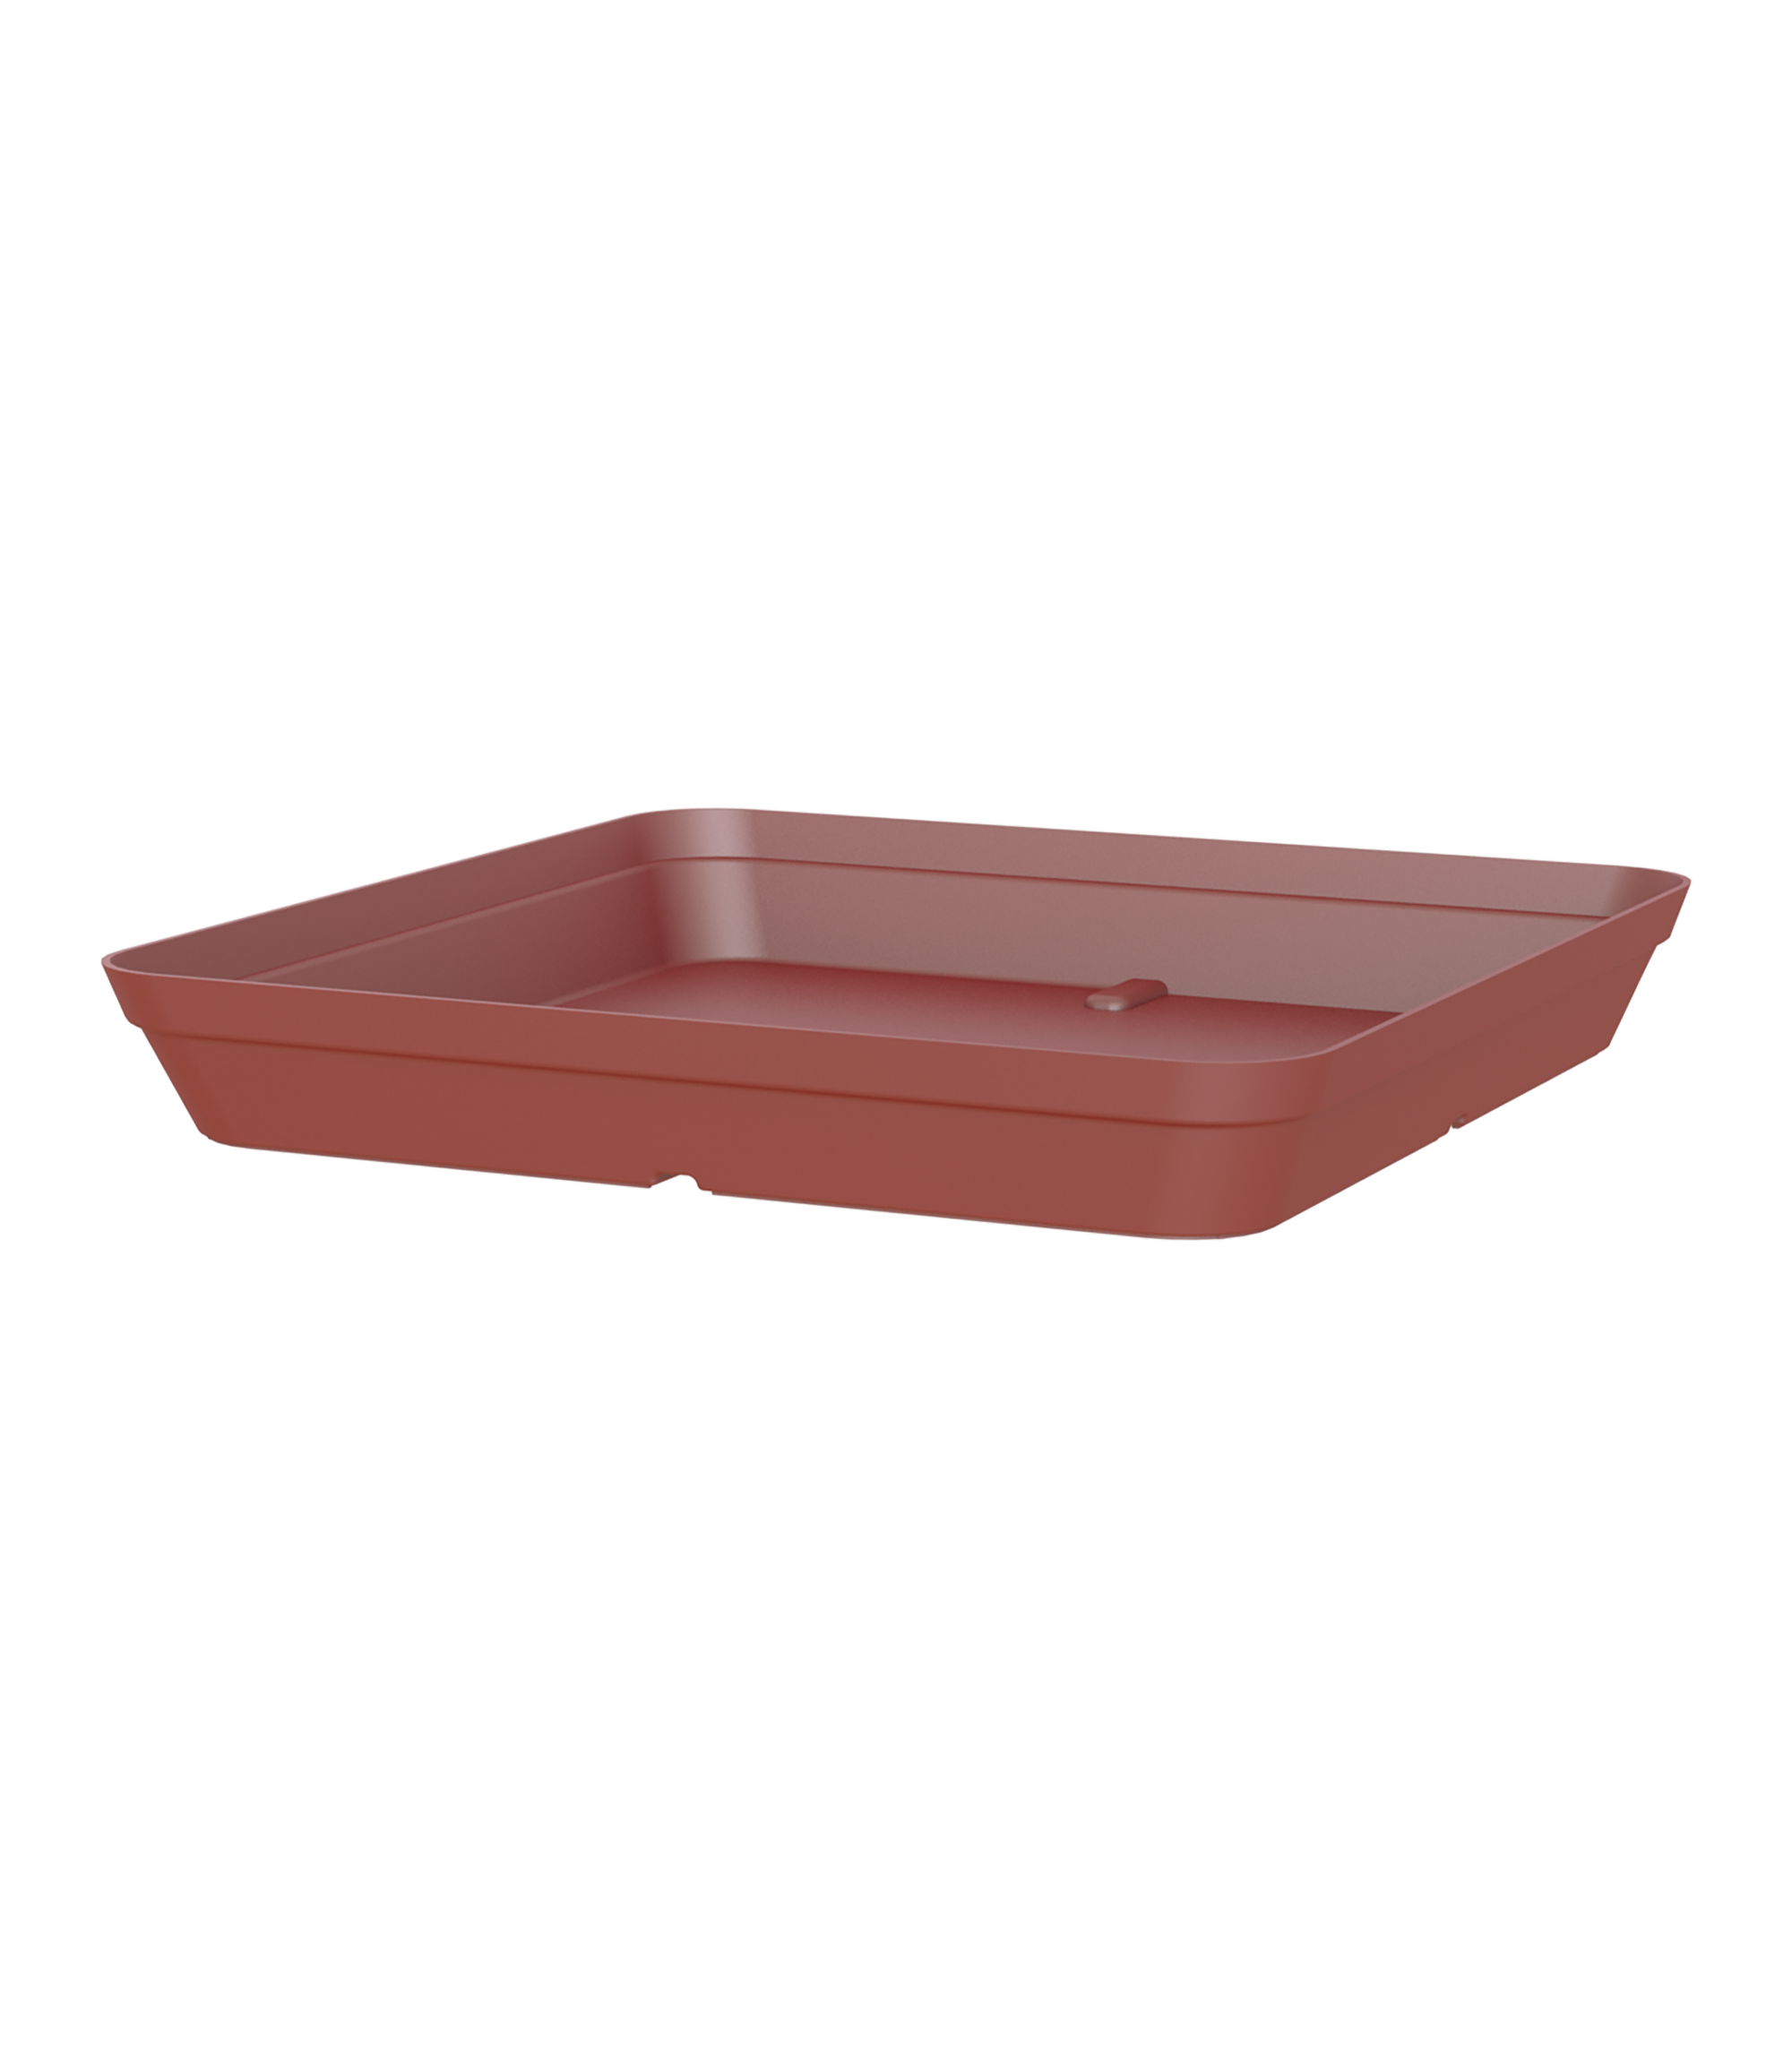 Plato de maceta capri de polipropileno rojo 34x34 cm